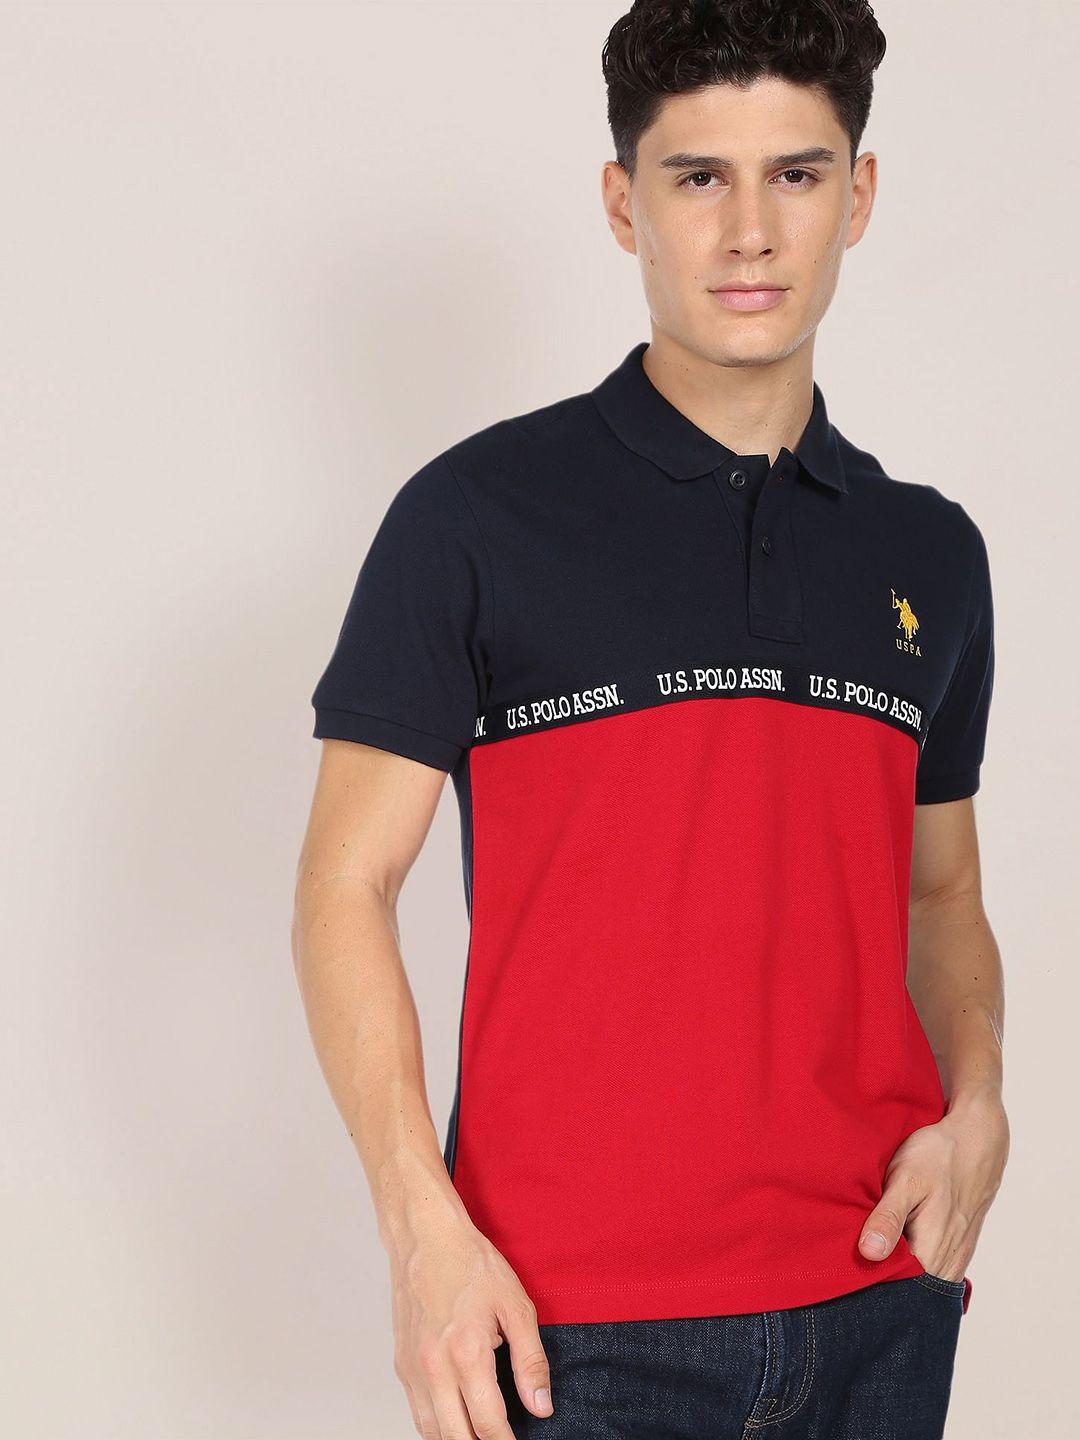 u.s. polo assn. men red & navy blue colourblocked logo tape polo collar cotton t-shirt